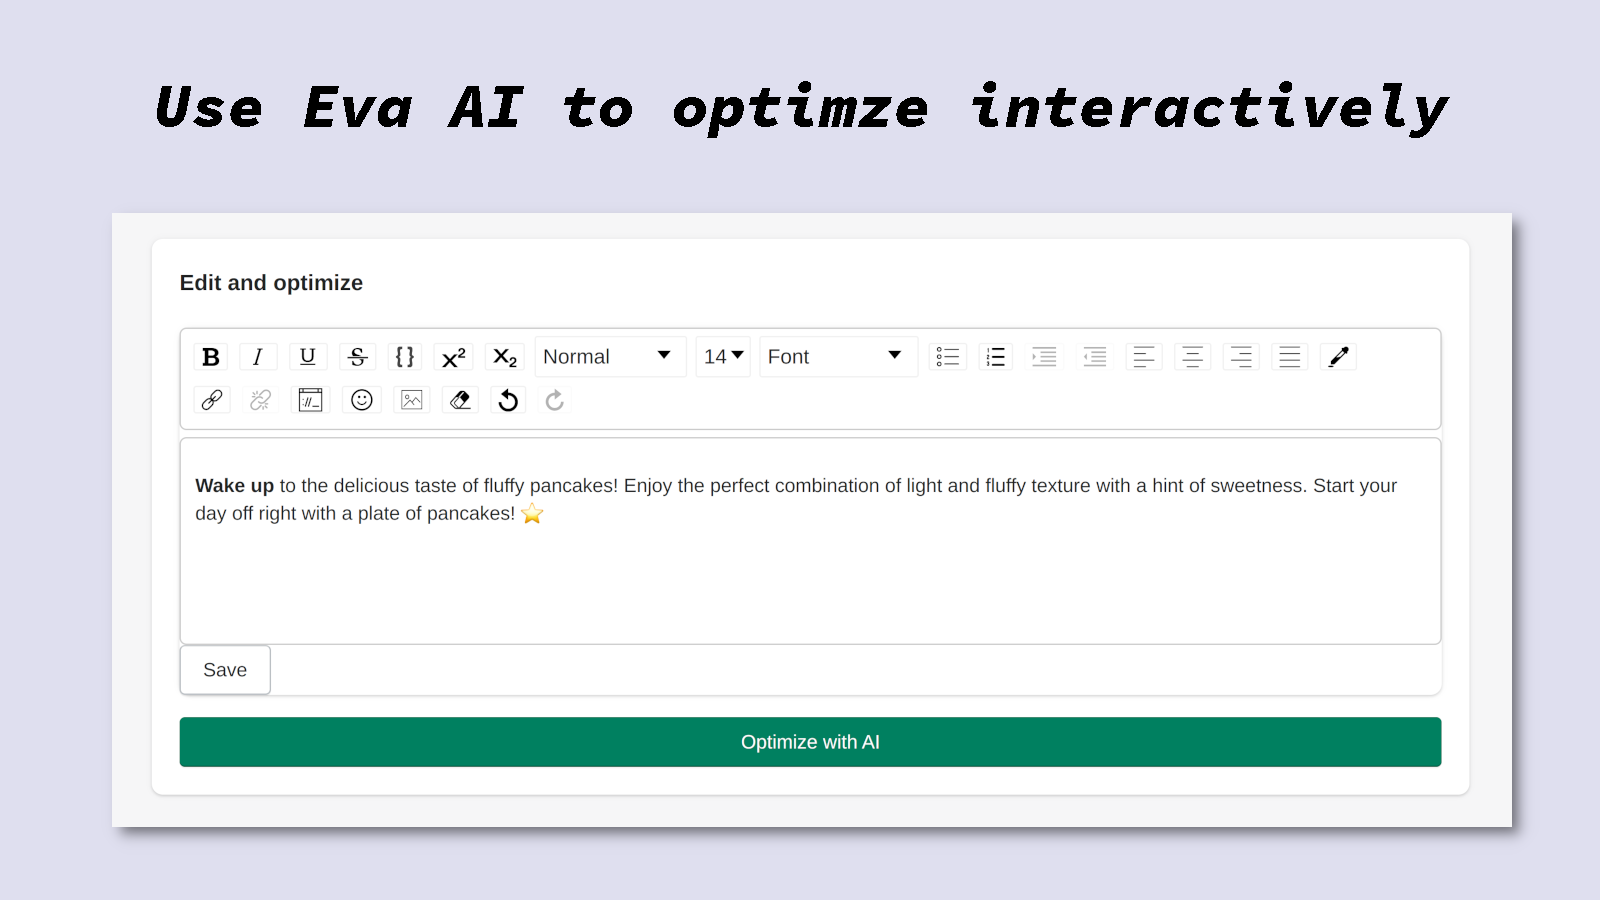 Optimize descriptions interactively with Eva AI.